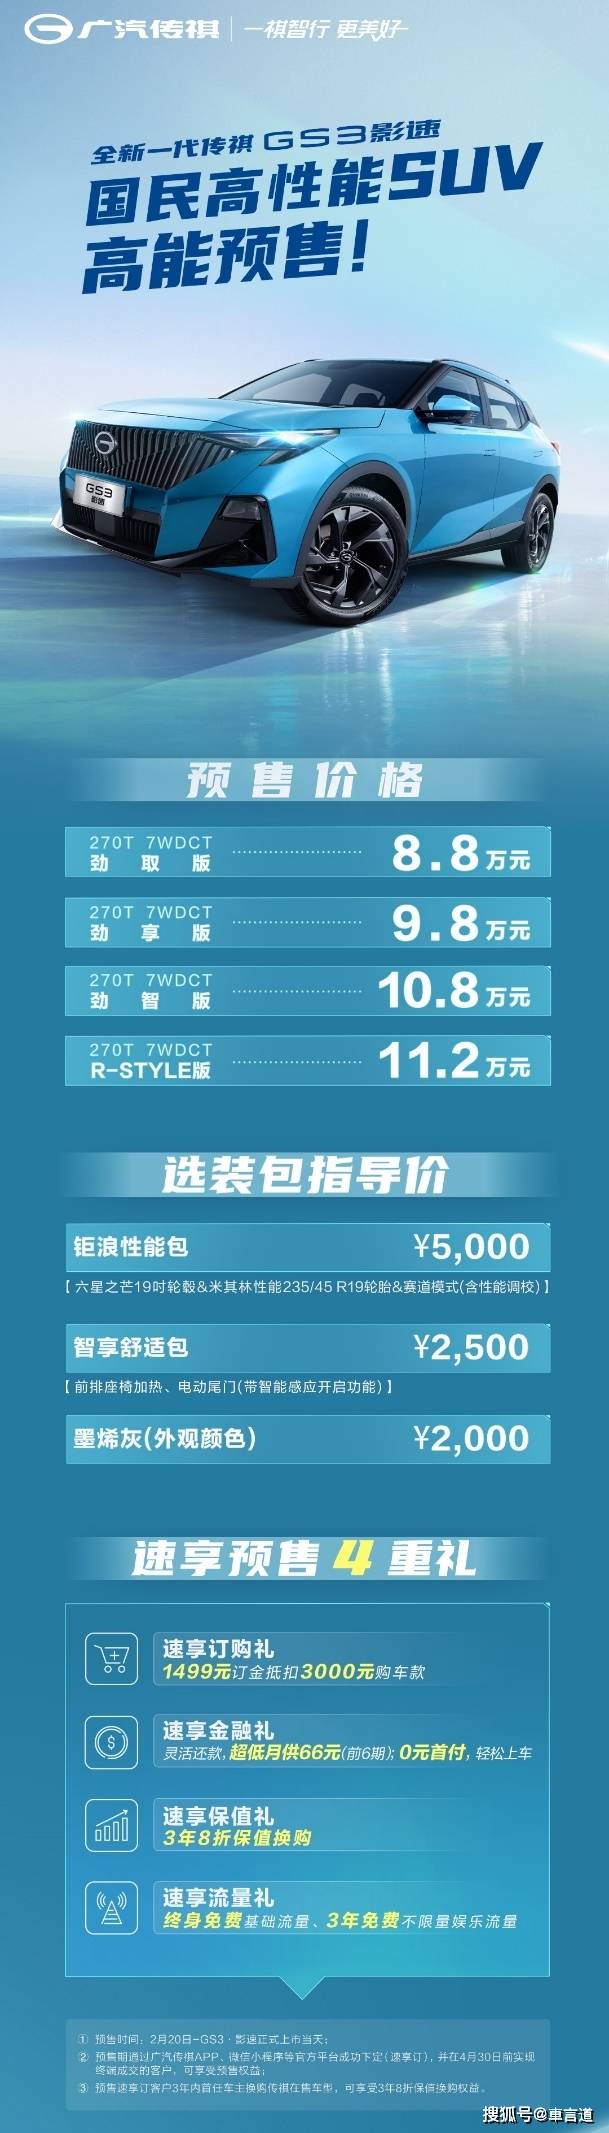 京东苹果保值换购版:预售8.8万起 全新一代传祺GS3放出3年8折高保值换购大招